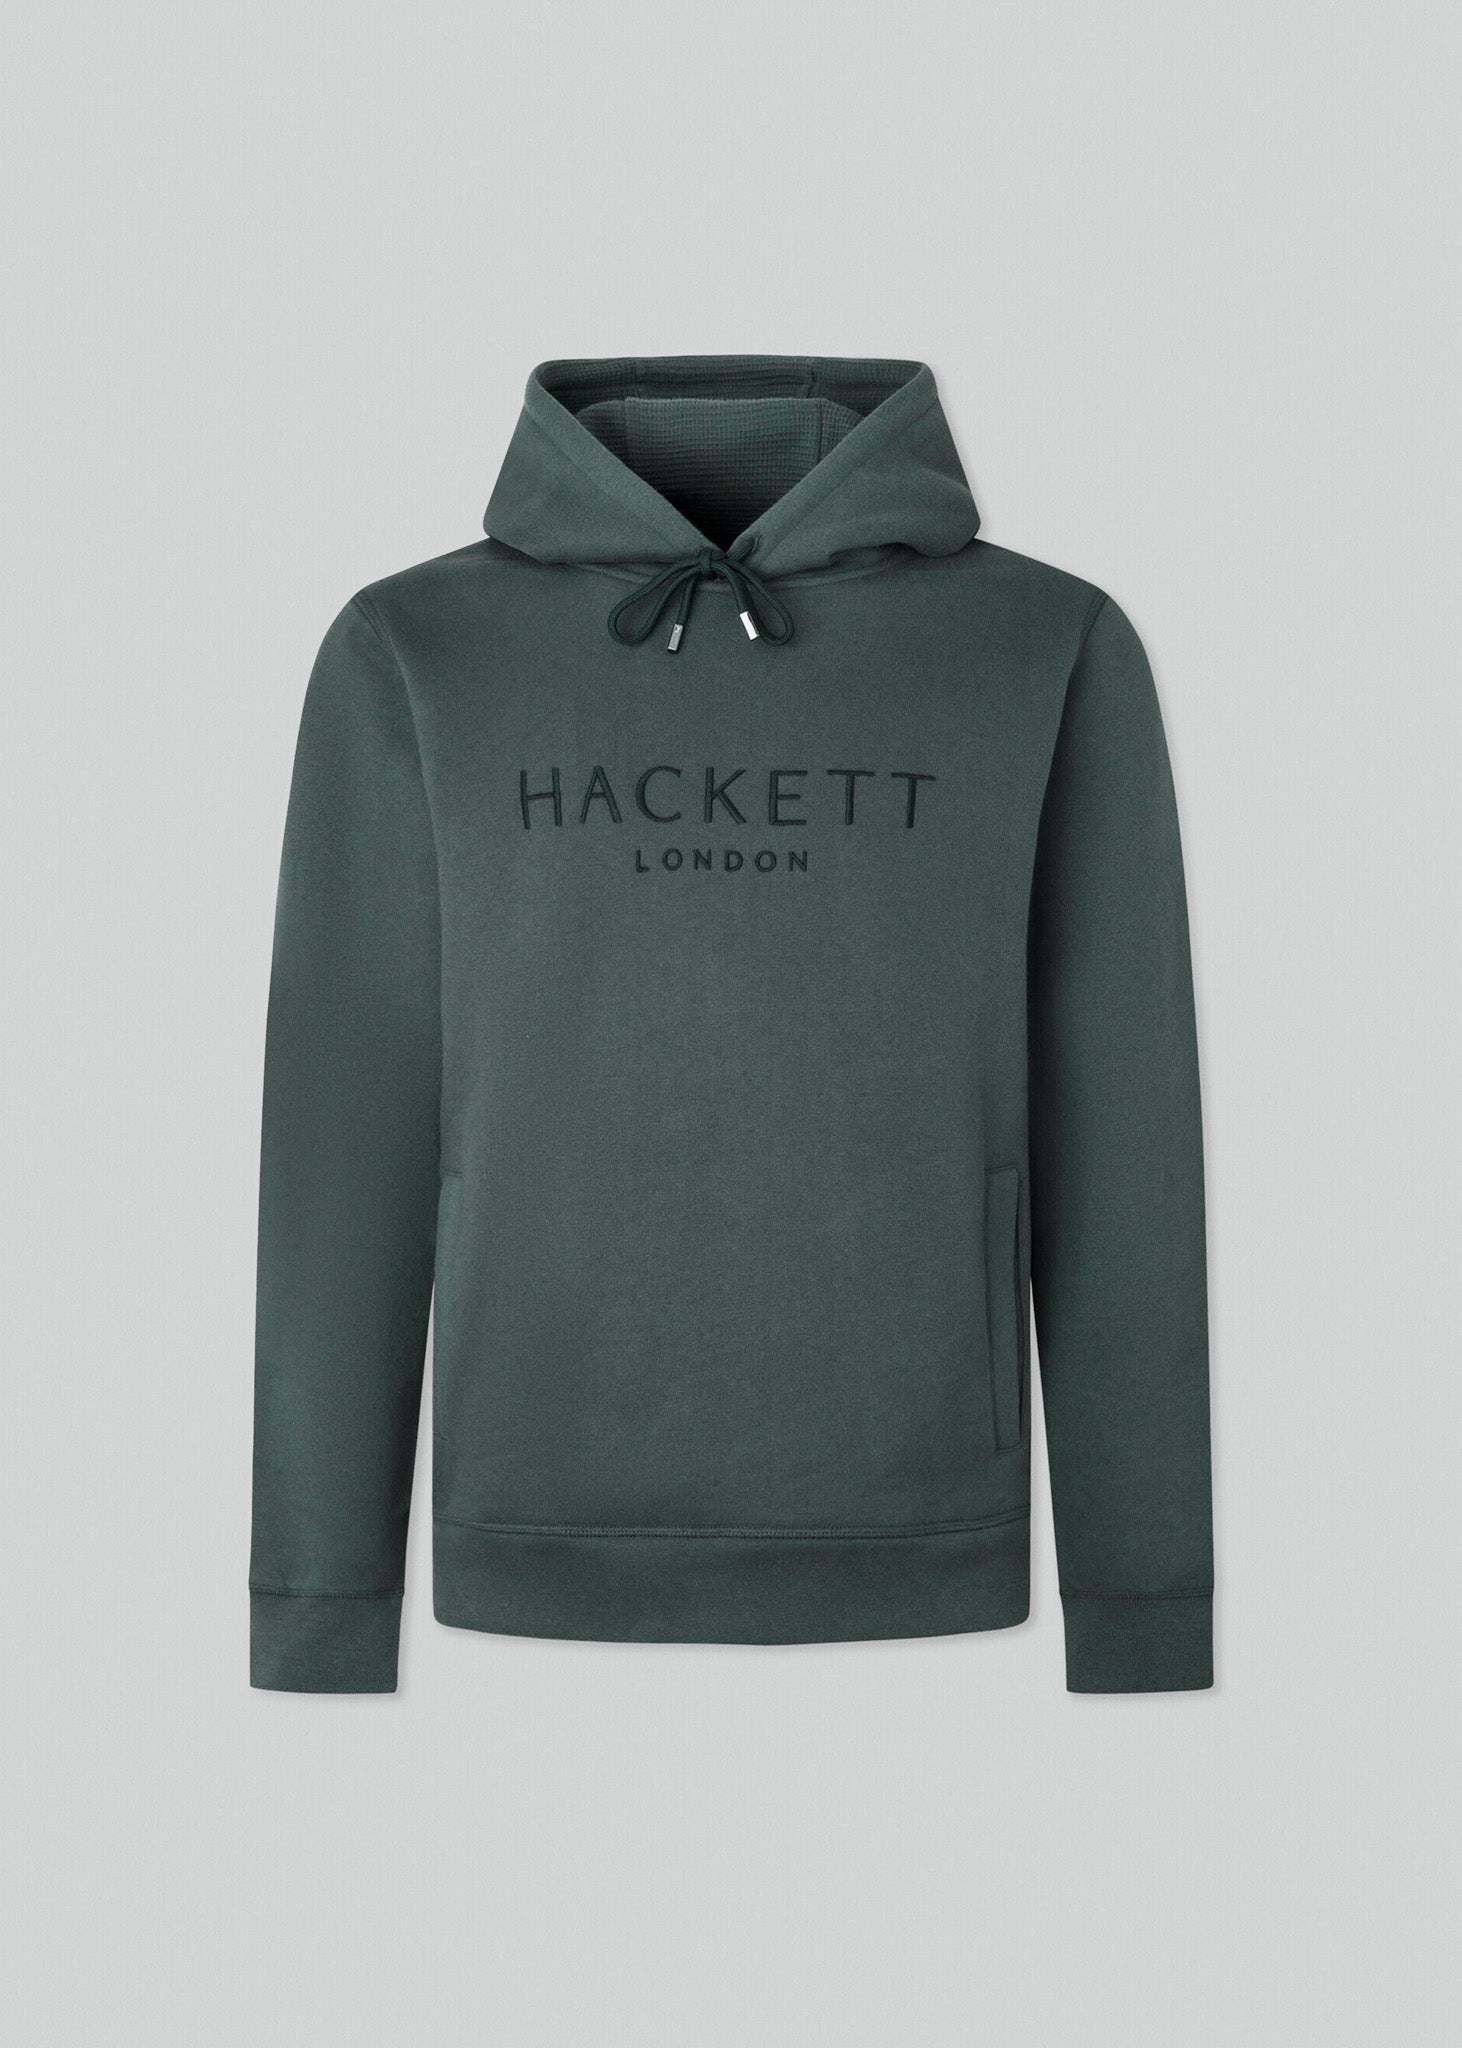 Hackett London Hoodies  Heritage hoody - dark green 